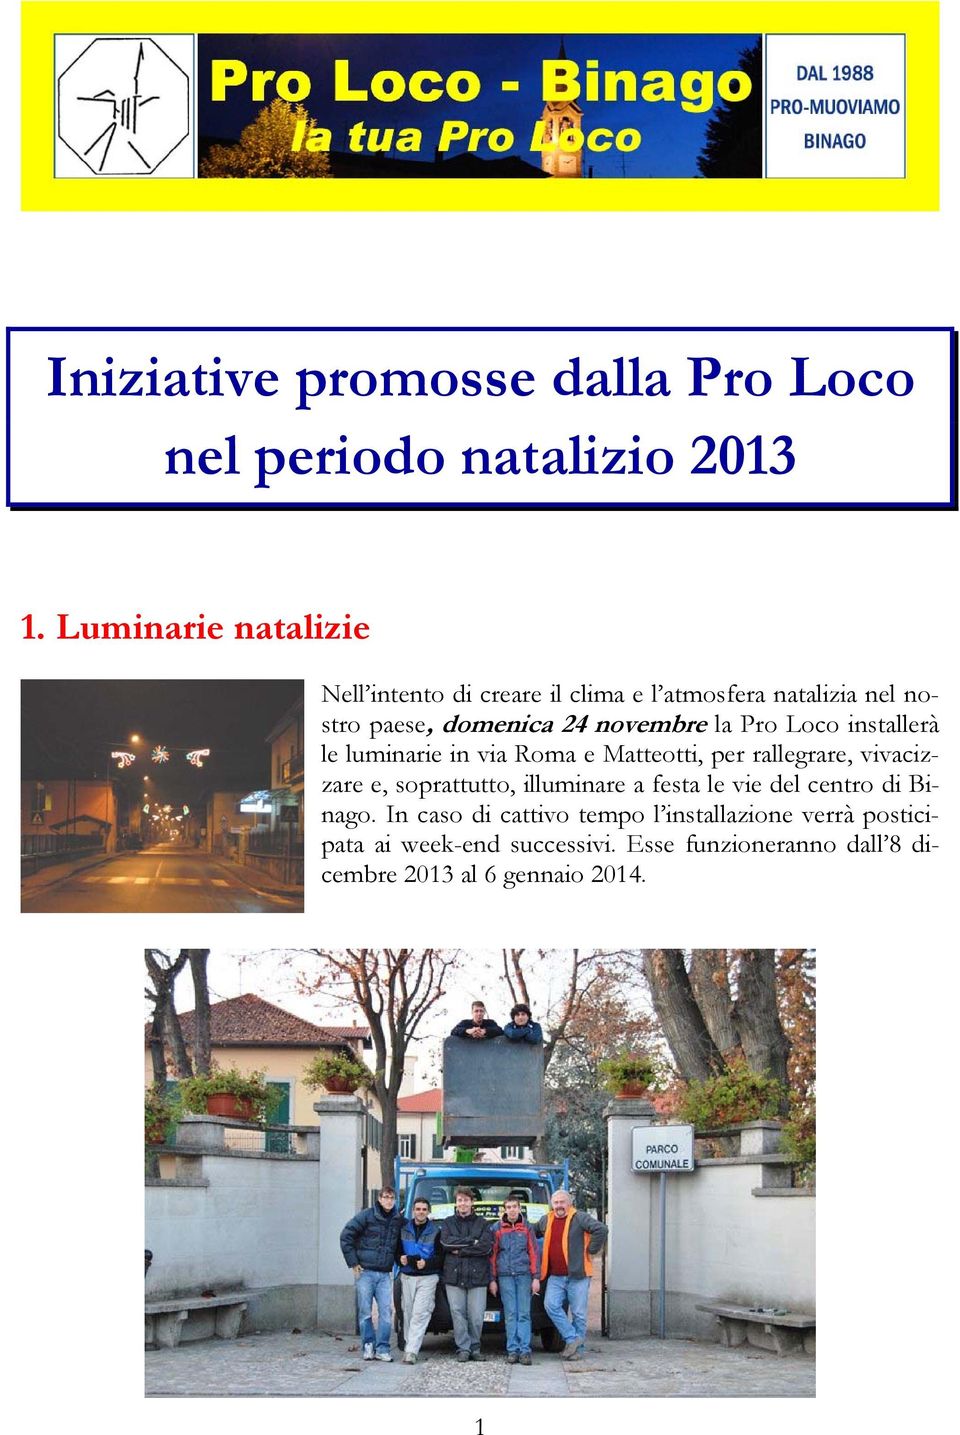 Pro Loco installerà le luminarie in via Roma e Matteotti, per rallegrare, vivacizzare e, soprattutto, illuminare a